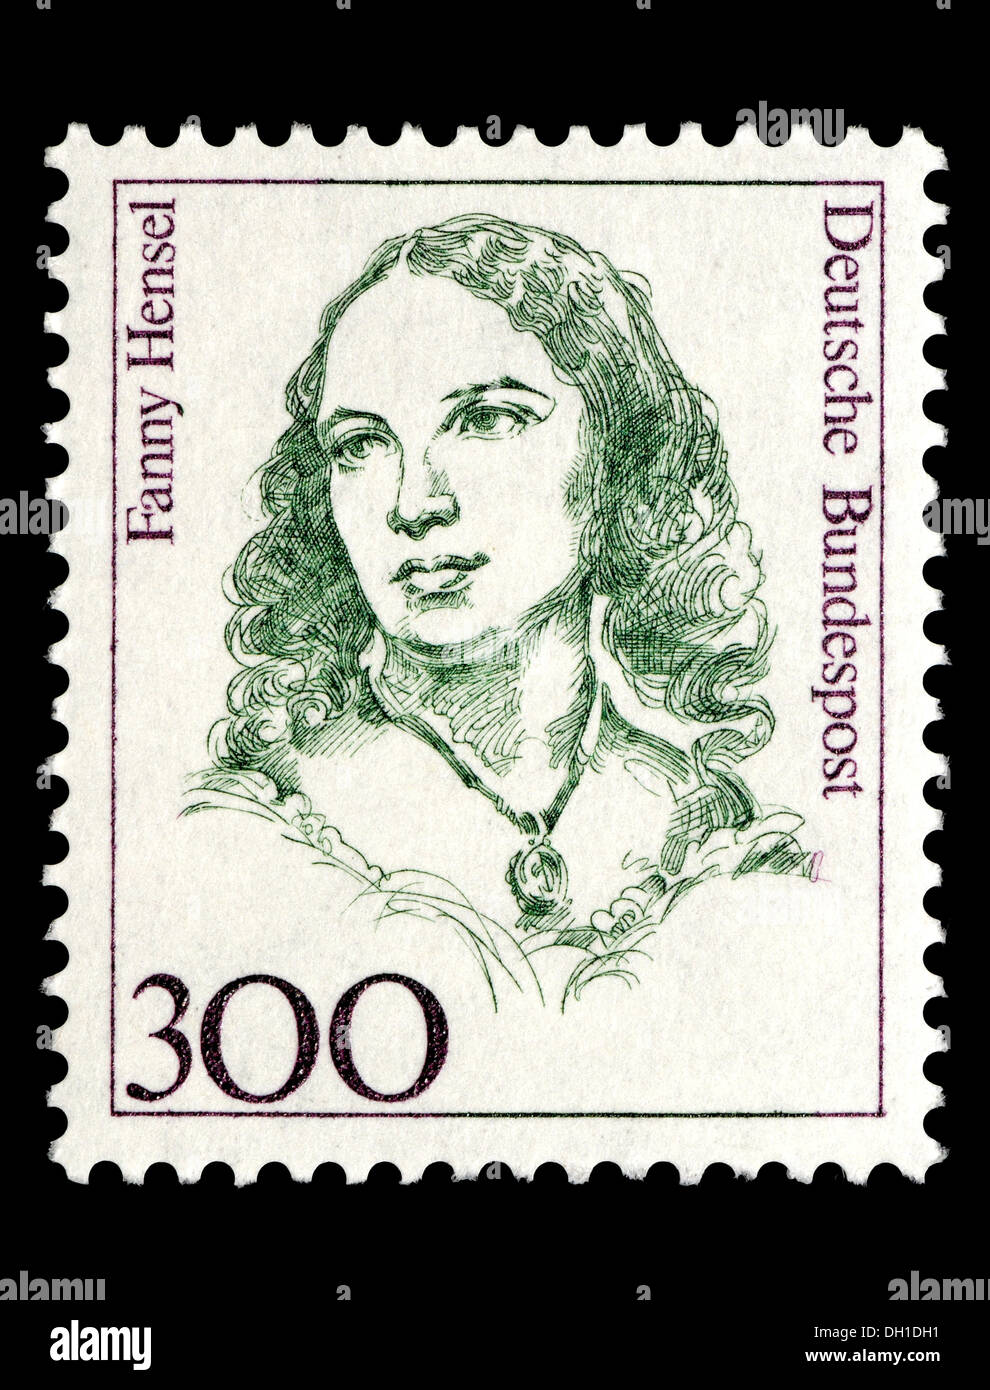 Portrait de Fanny Hensel (1805 - 1847 : pianiste et compositeur allemand, soeur de Felix Mendelssohn) sur timbre-poste allemand. Banque D'Images